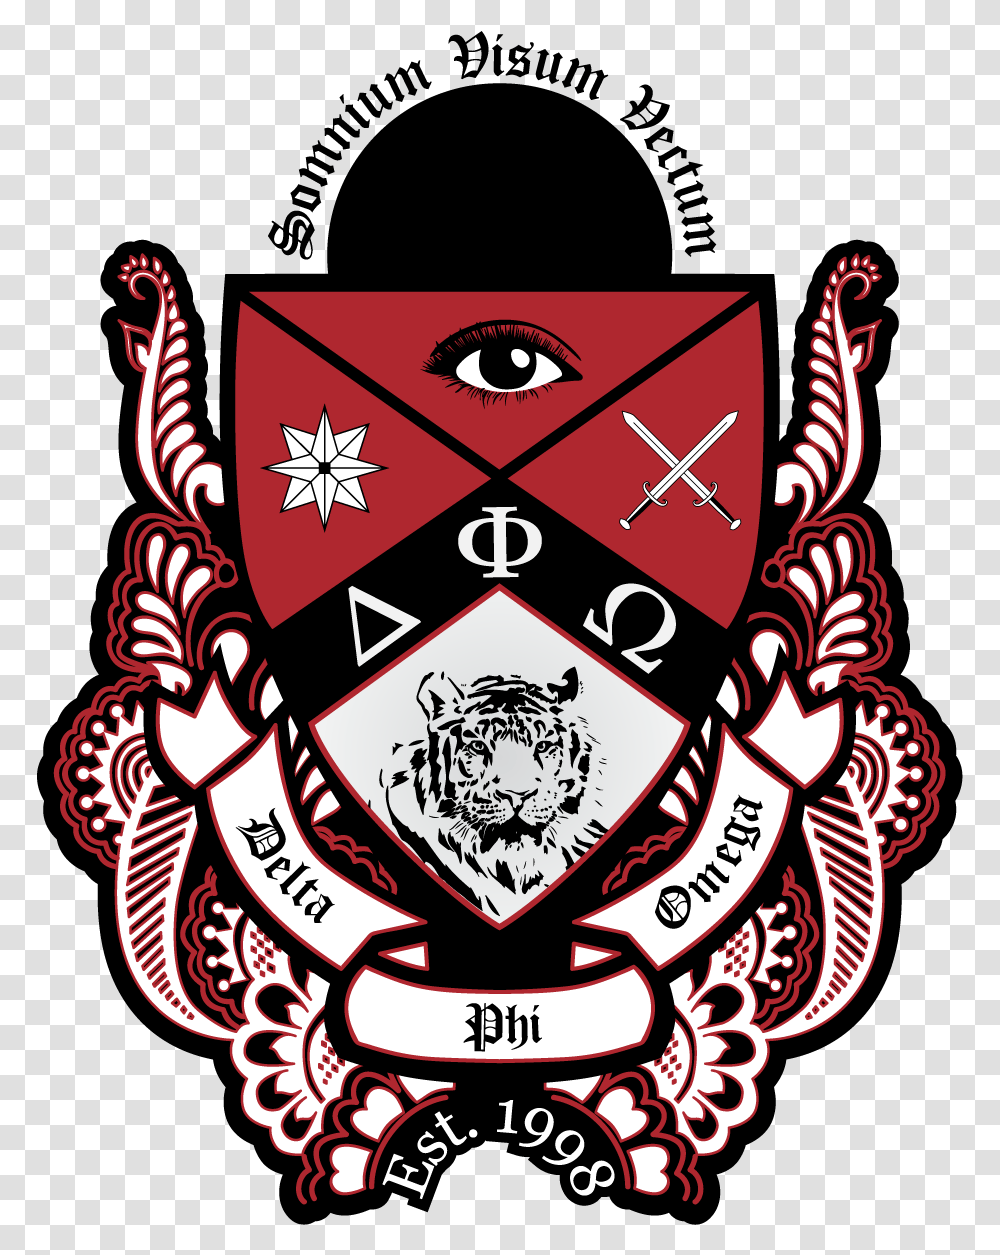 Delta Phi Omega Crest, Emblem, Armor, Logo Transparent Png